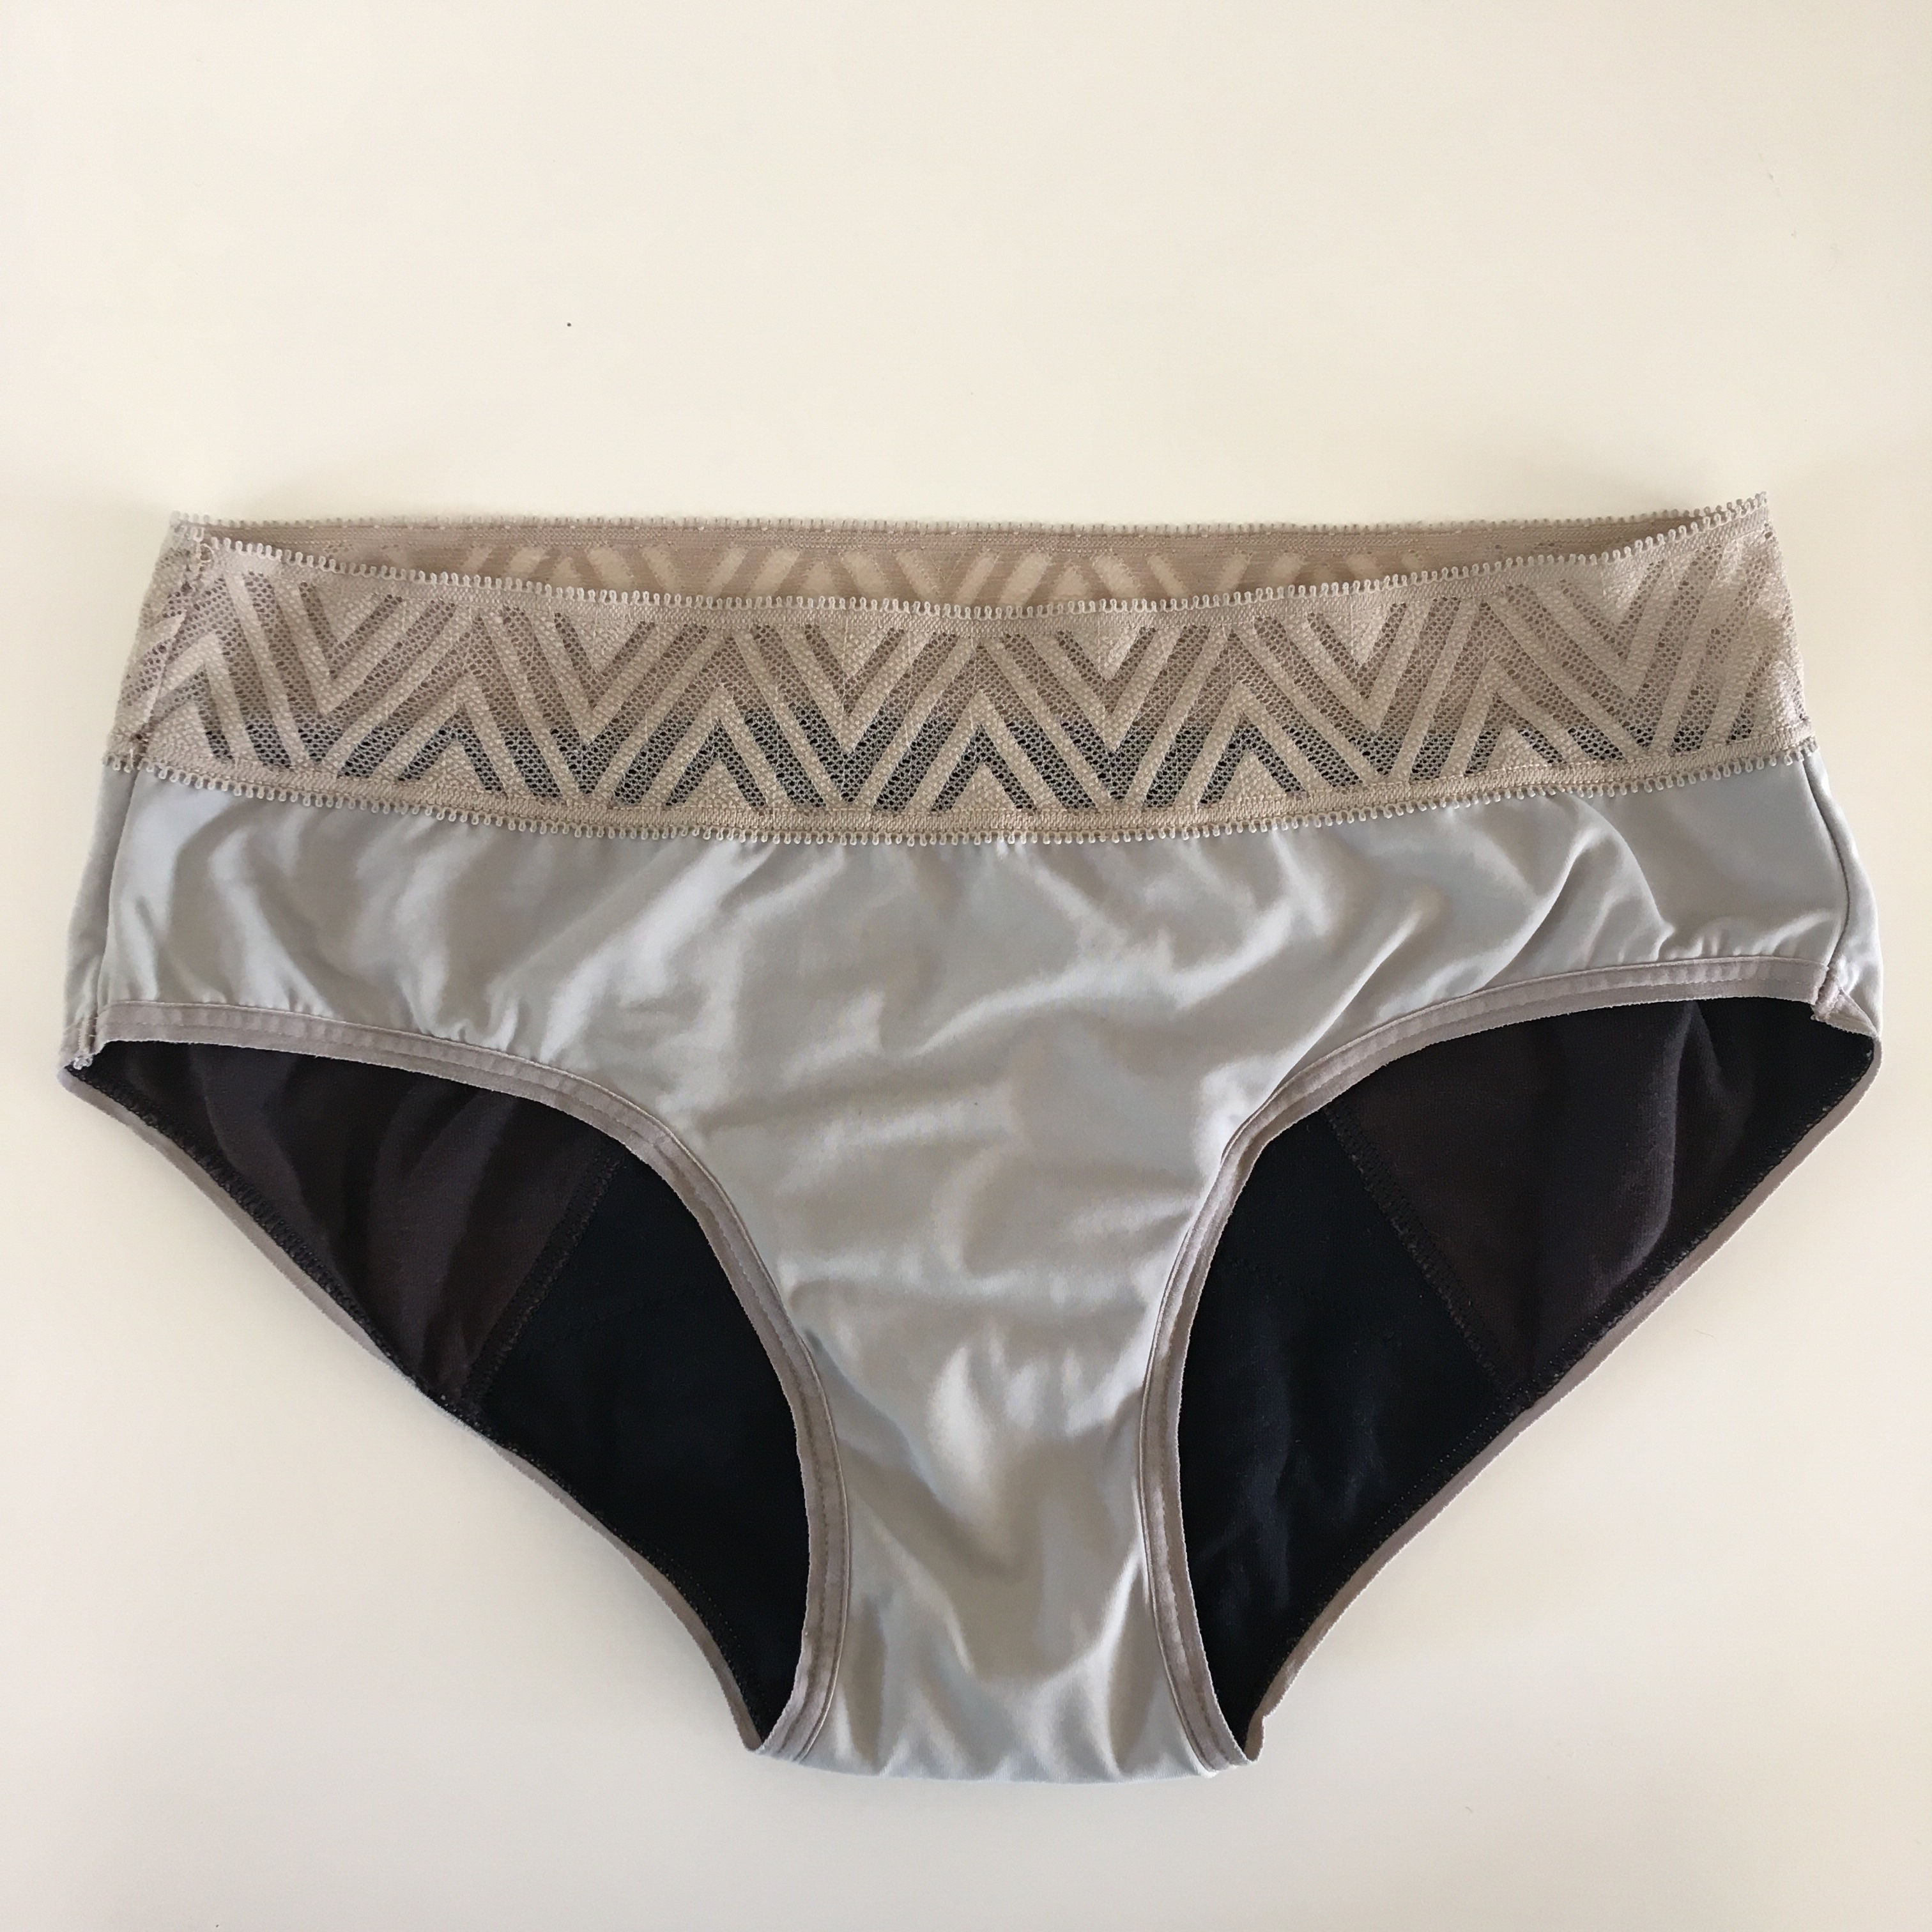 Thinx period underwear review